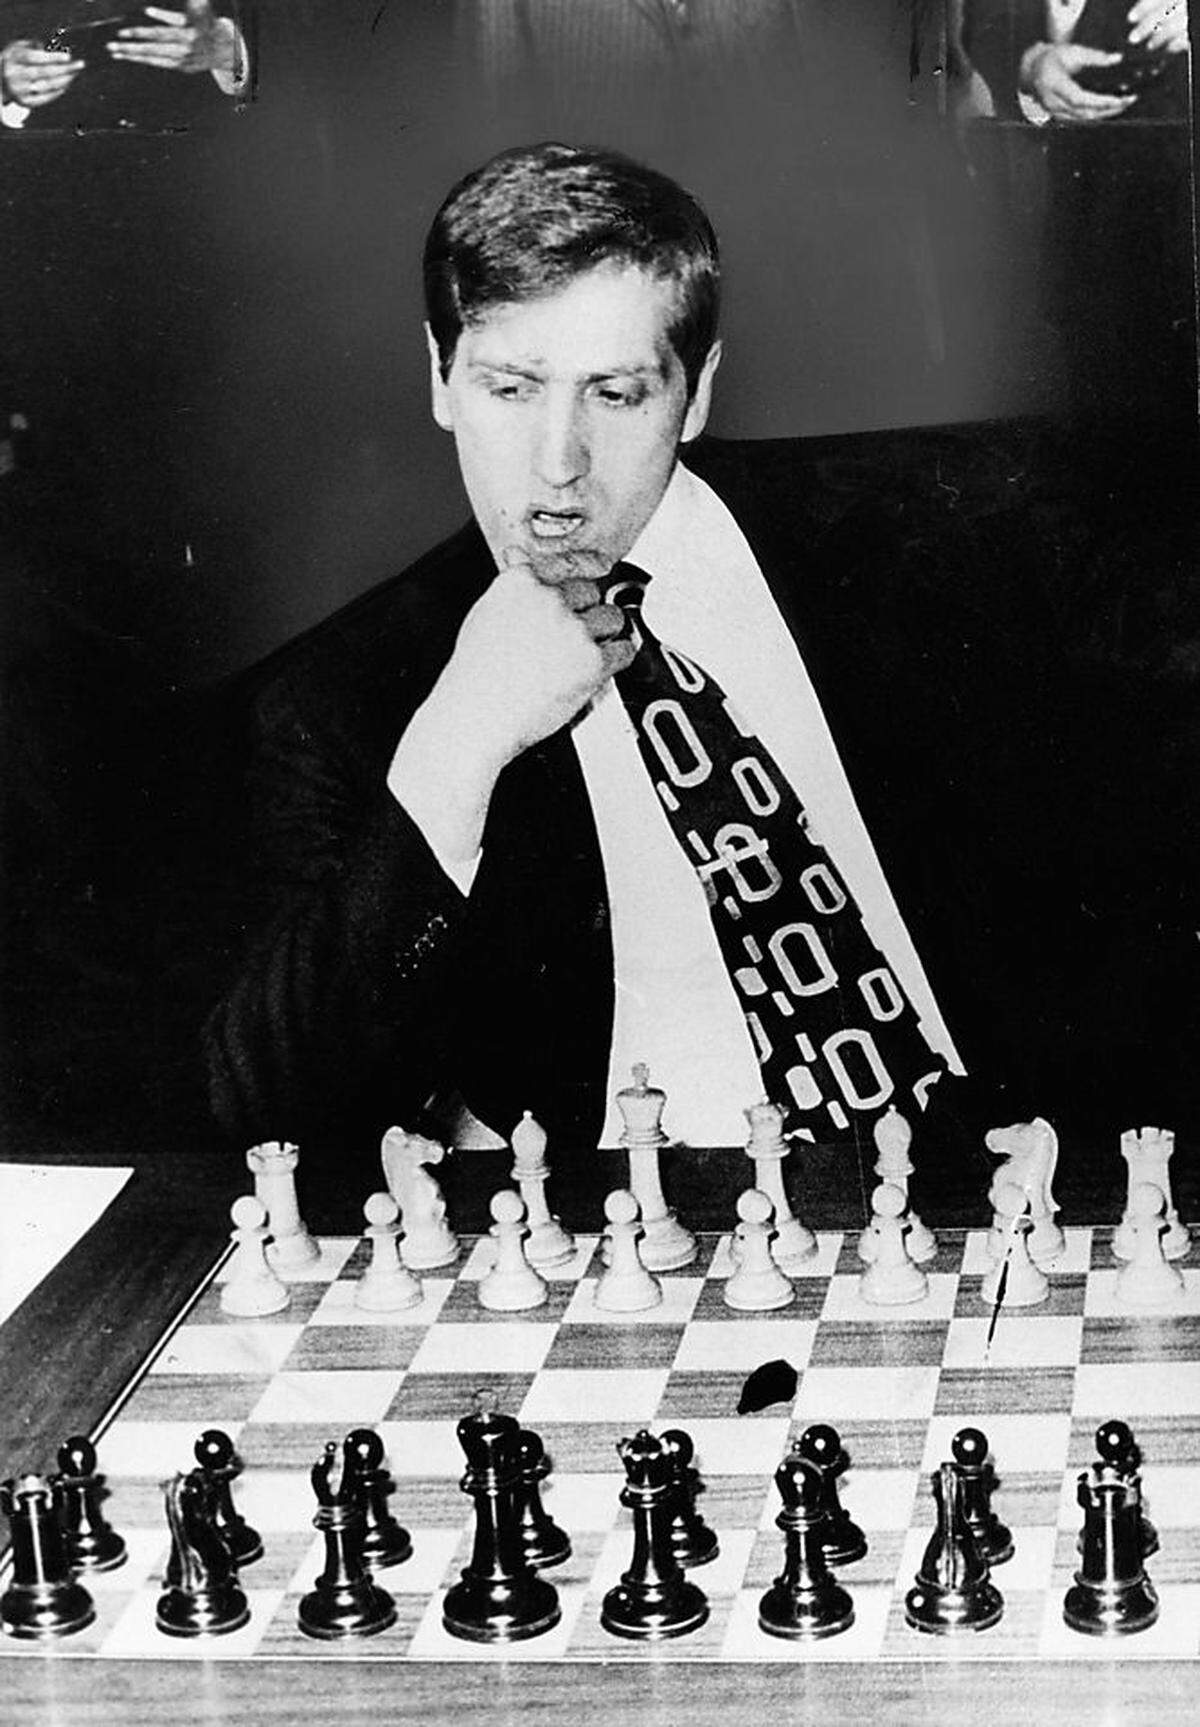 Eine Exhumierung wegen eines Vaterschaftstests ist skurril, aber auch keine völlige Neuheit. Den ehemaligen Schachweltmeister Bobby Fischer ereilte ein ähnliches Schicksal.